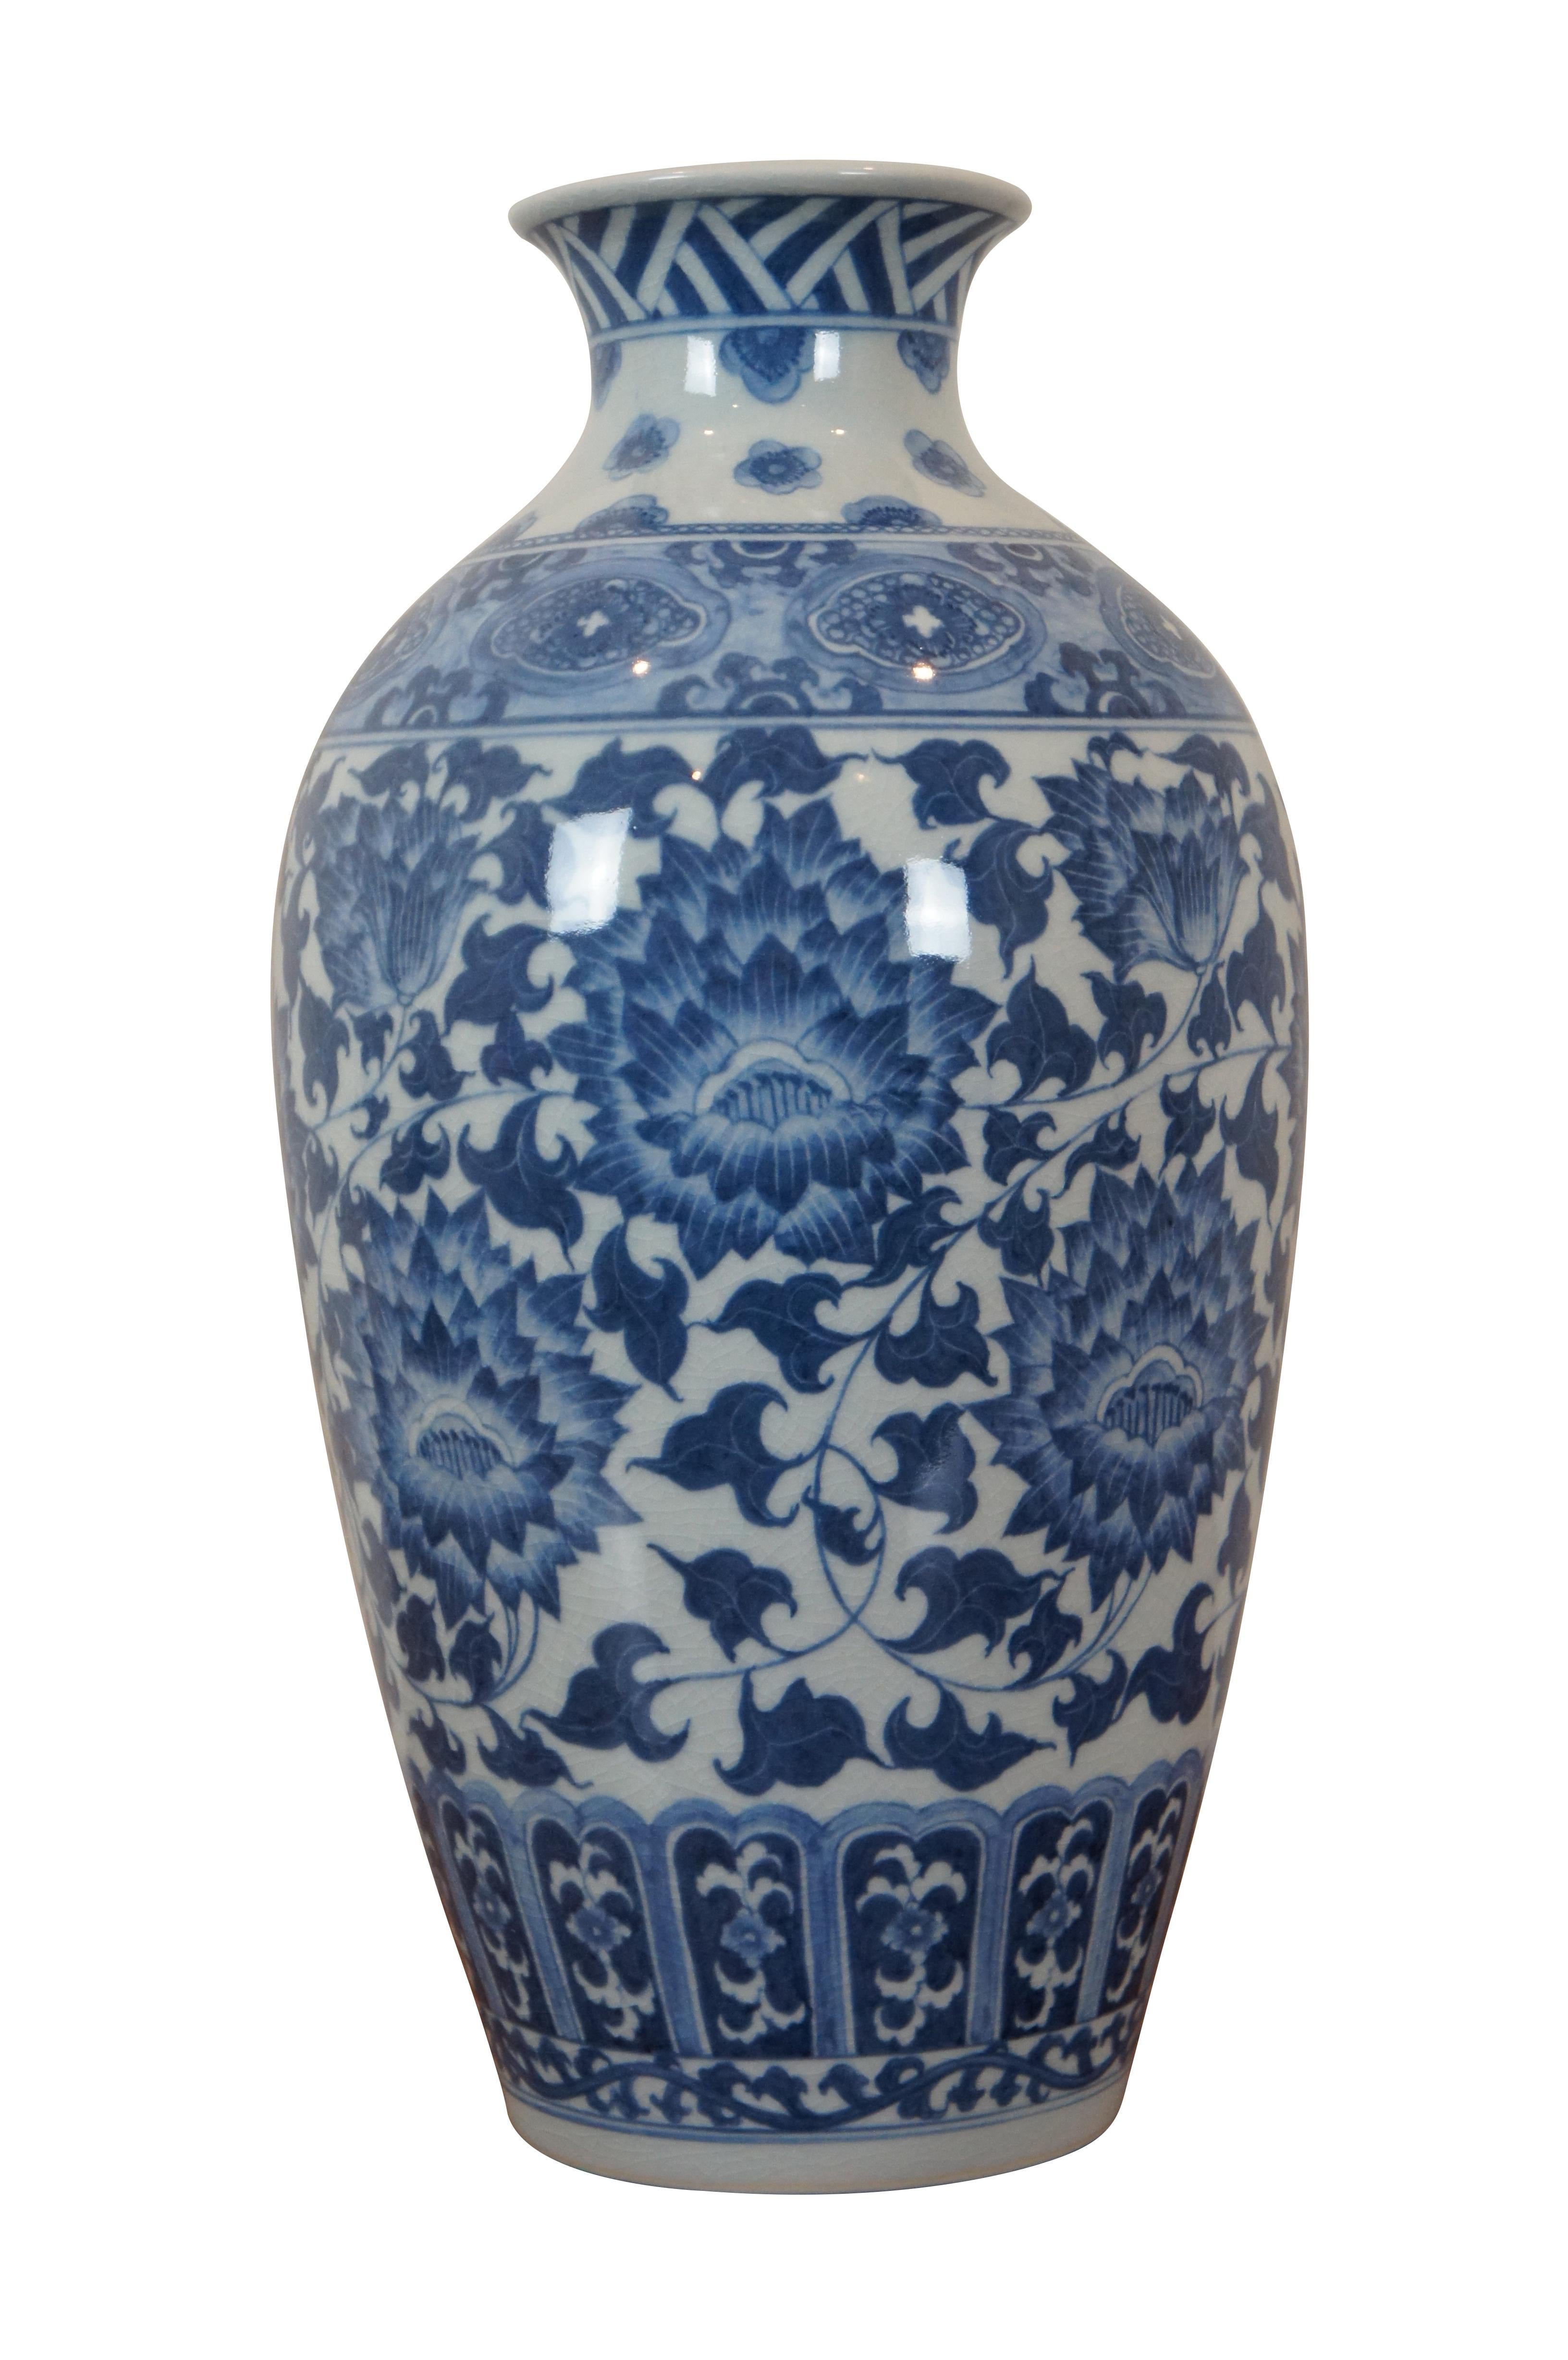 Vintage Maitland Smith Vase im chinesischen Stil mit floralem Muster in Blau und Weiß und kunstvollen Rissen auf der Oberfläche. Handgefertigt in Thailand. #2187-457.

Abmessungen:
8